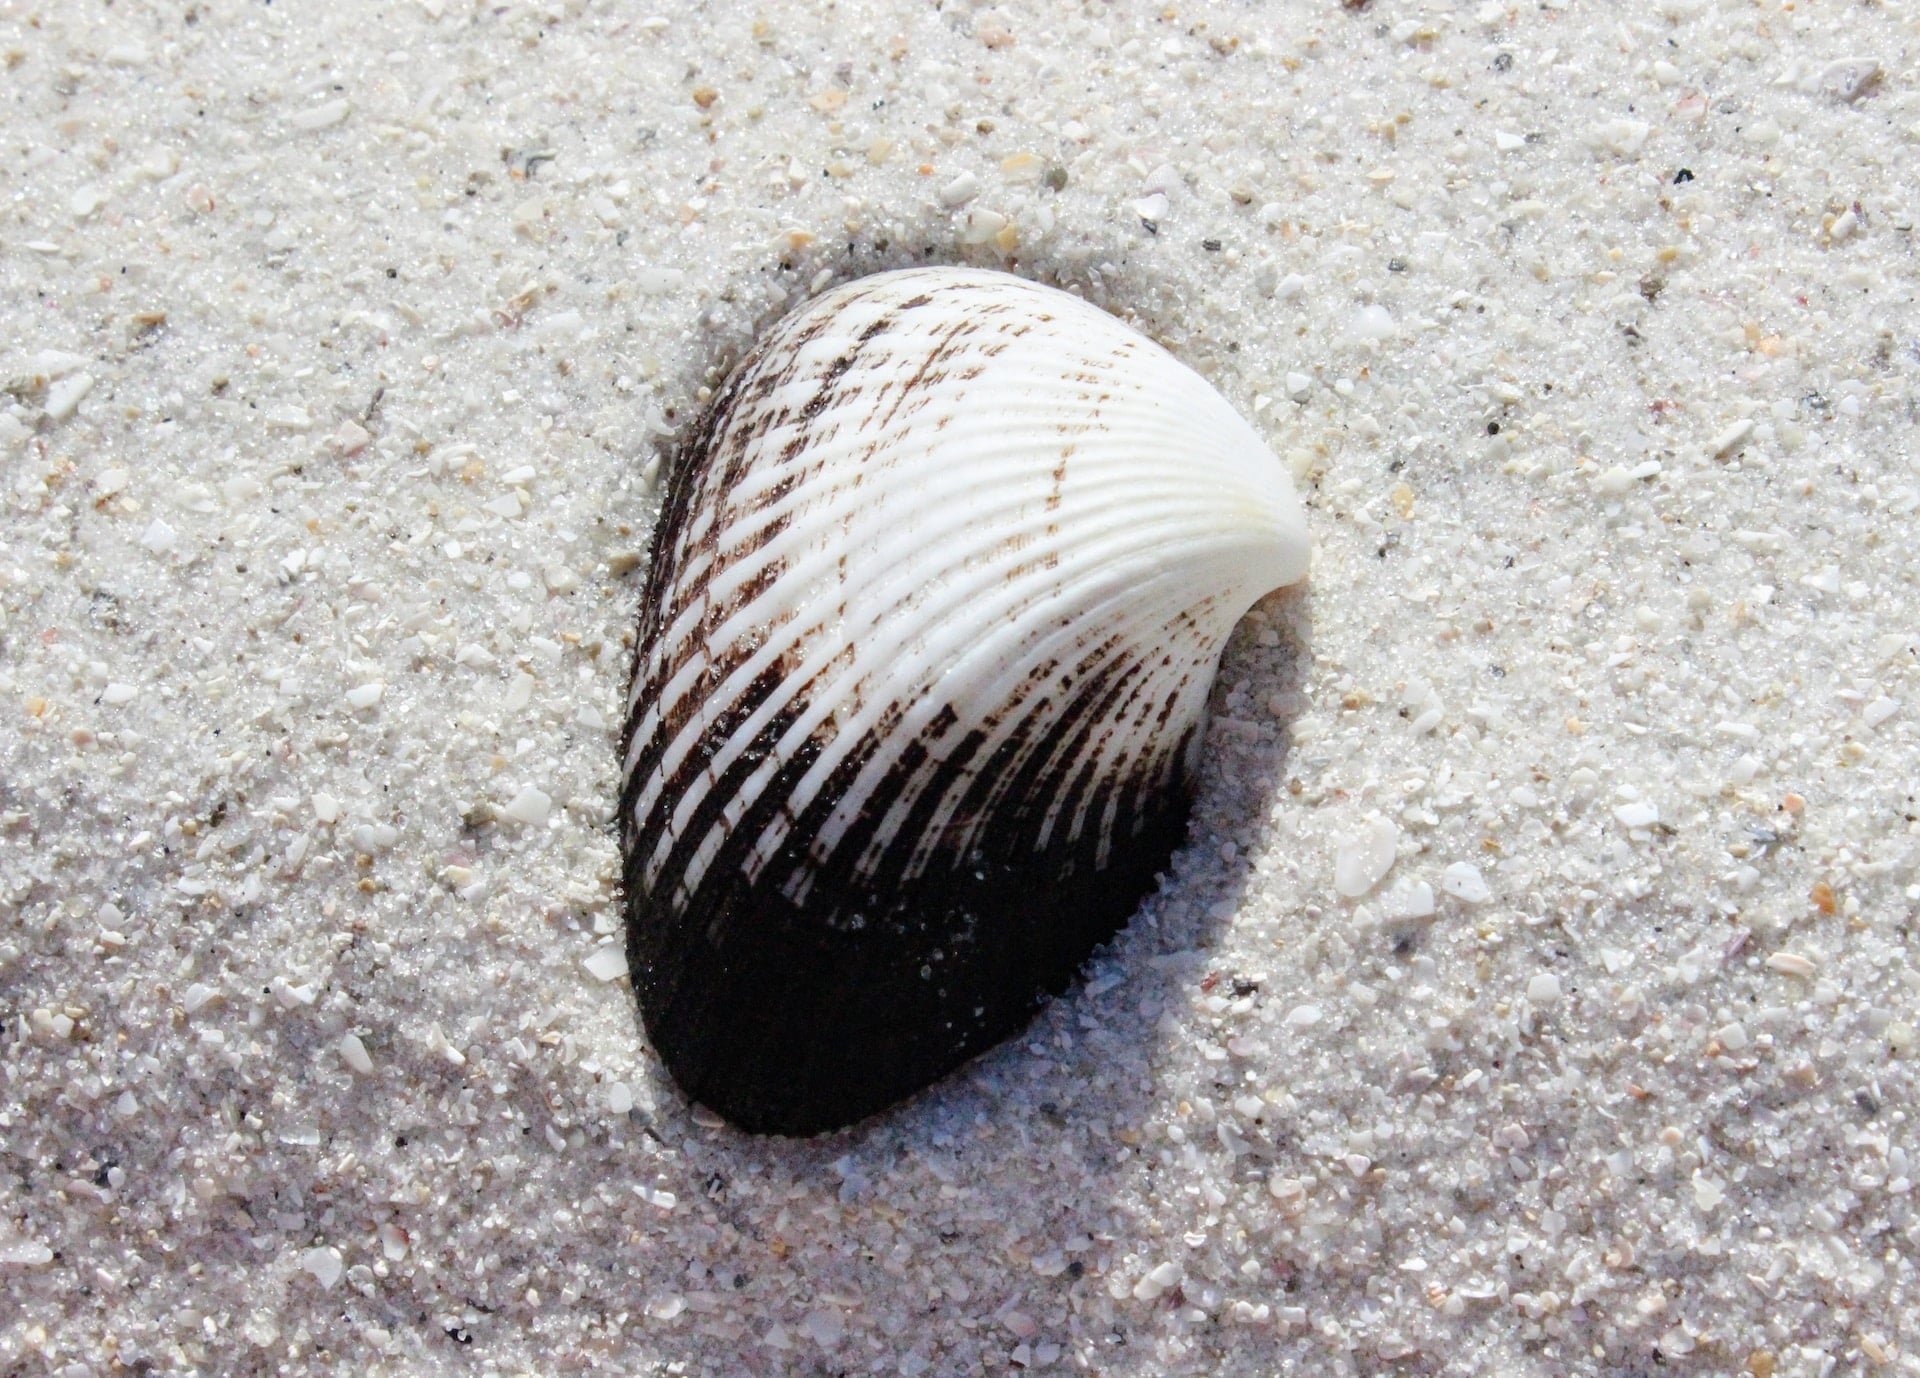 White and black seashell on white sand near Lutz, Florida.